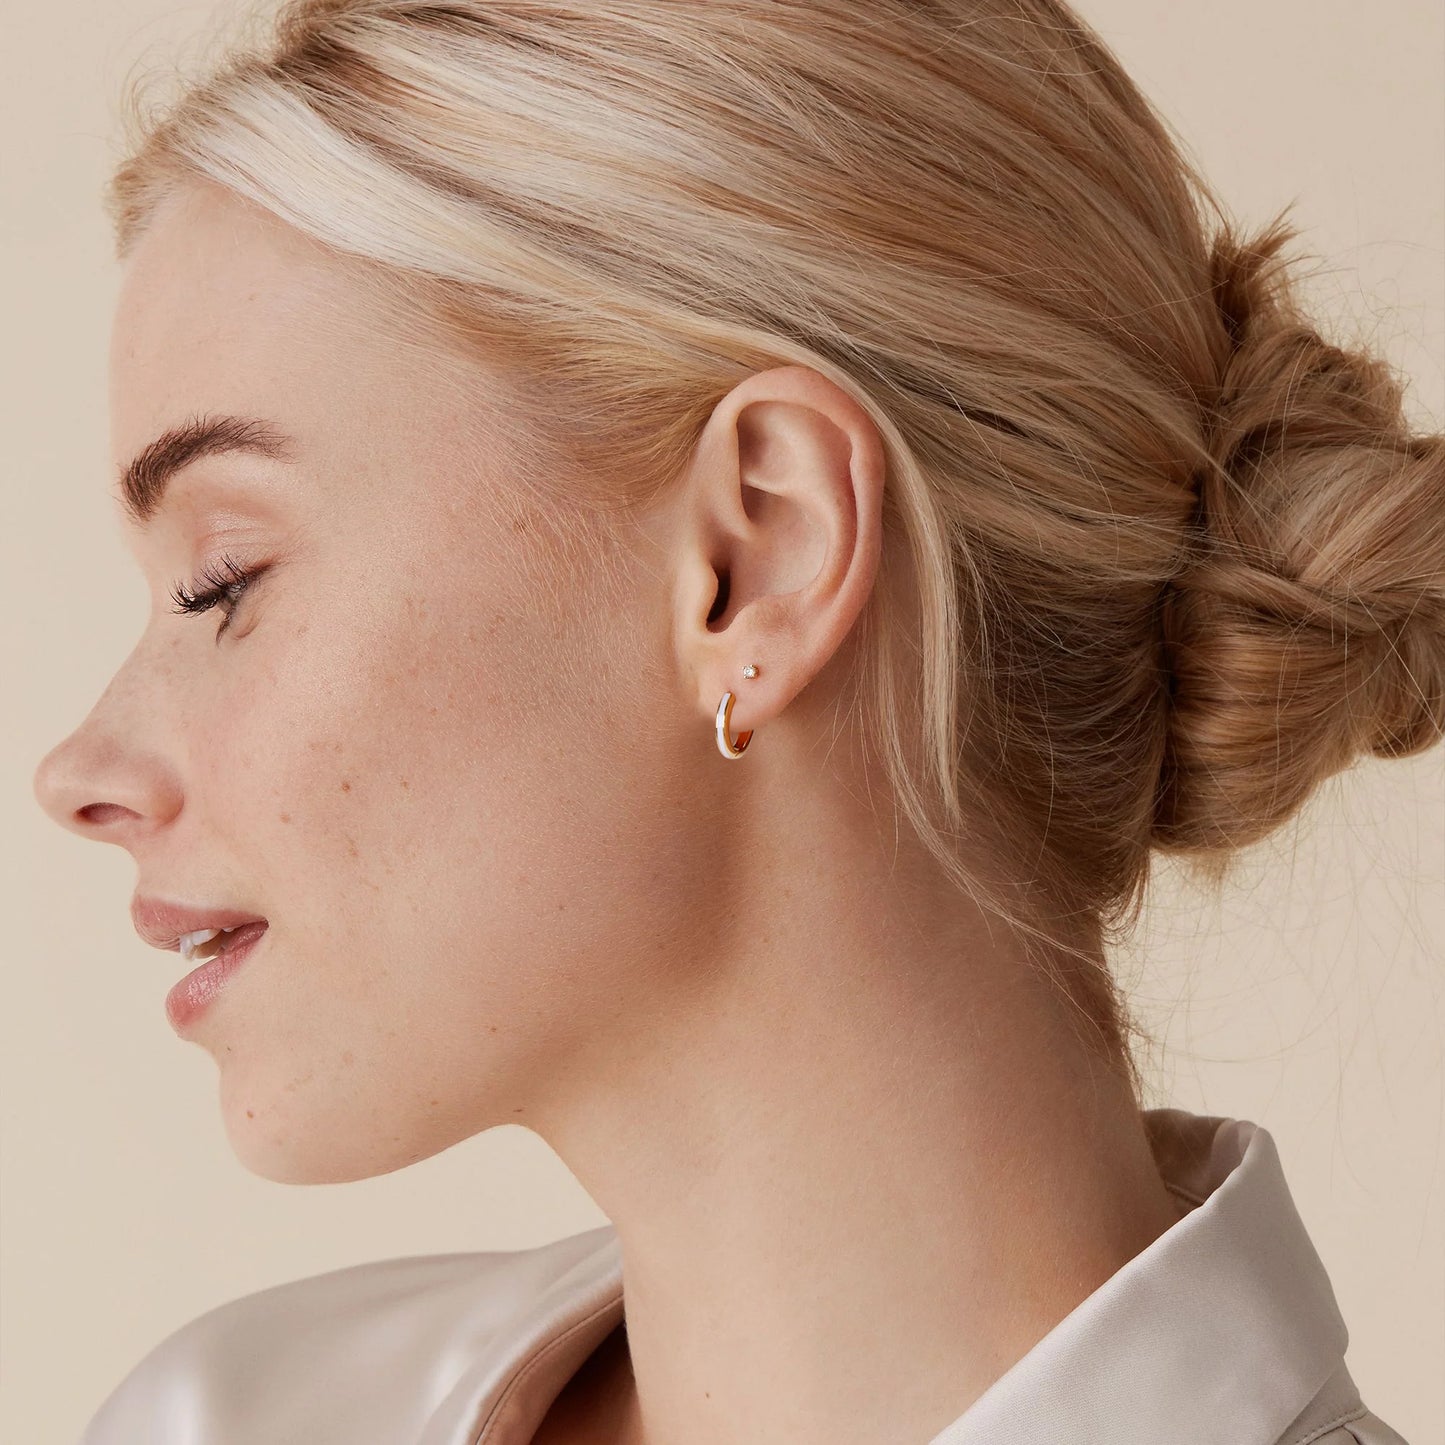 White Enamel Gold Huggie Earrings Gift for Her